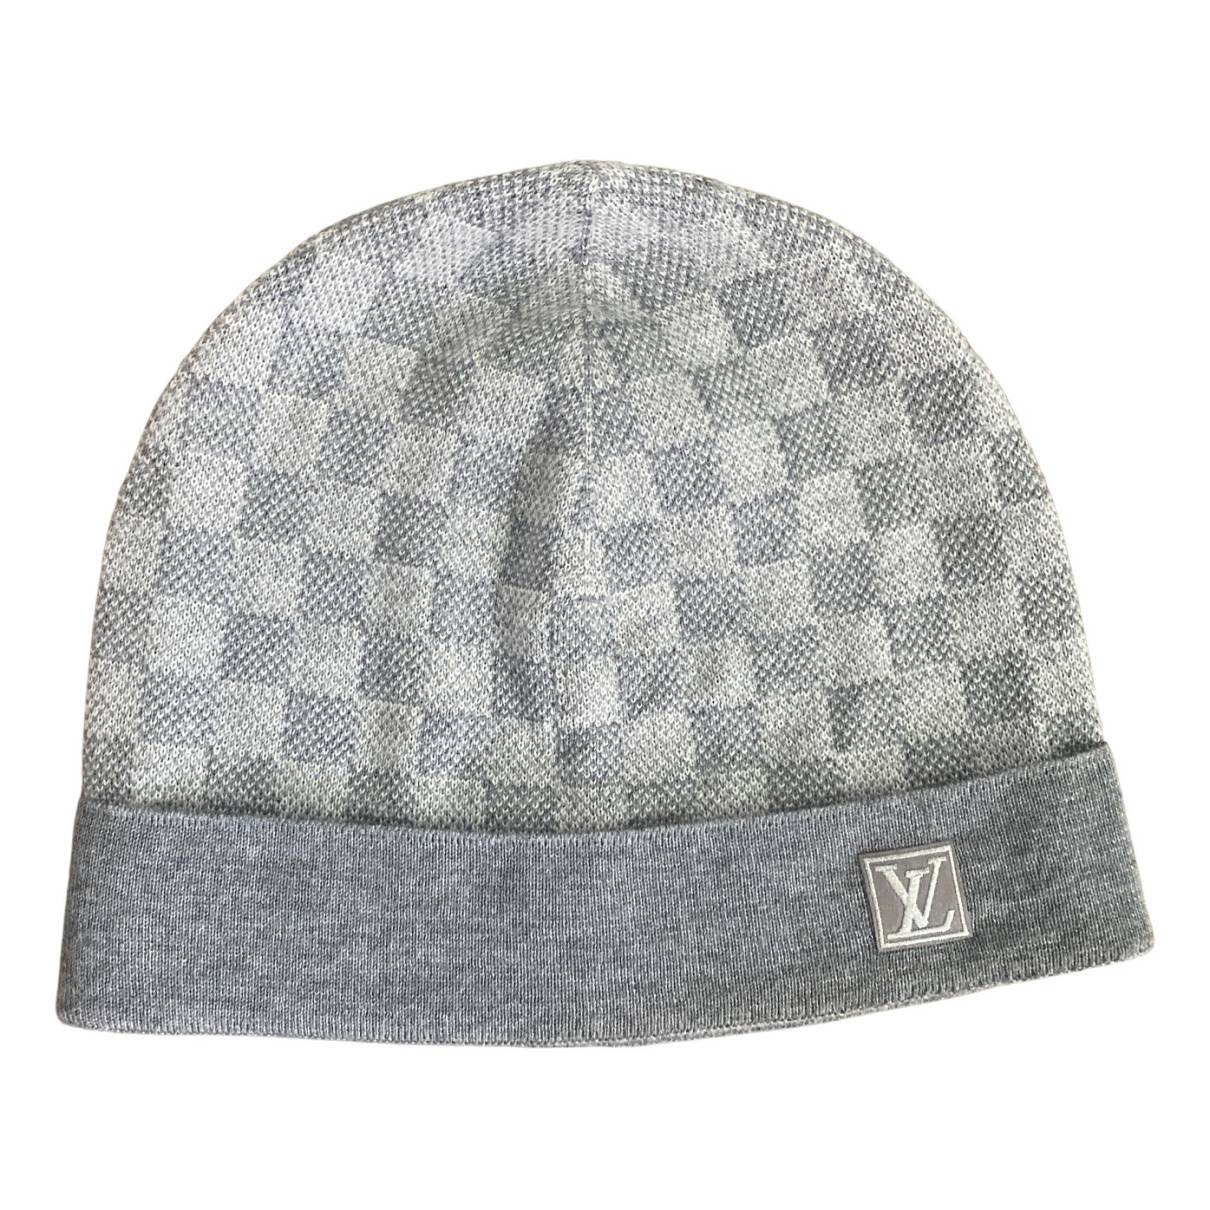 Louis Vuitton Hüte, Mützen aus Wolle - Grau - Größe 0 - 32748657